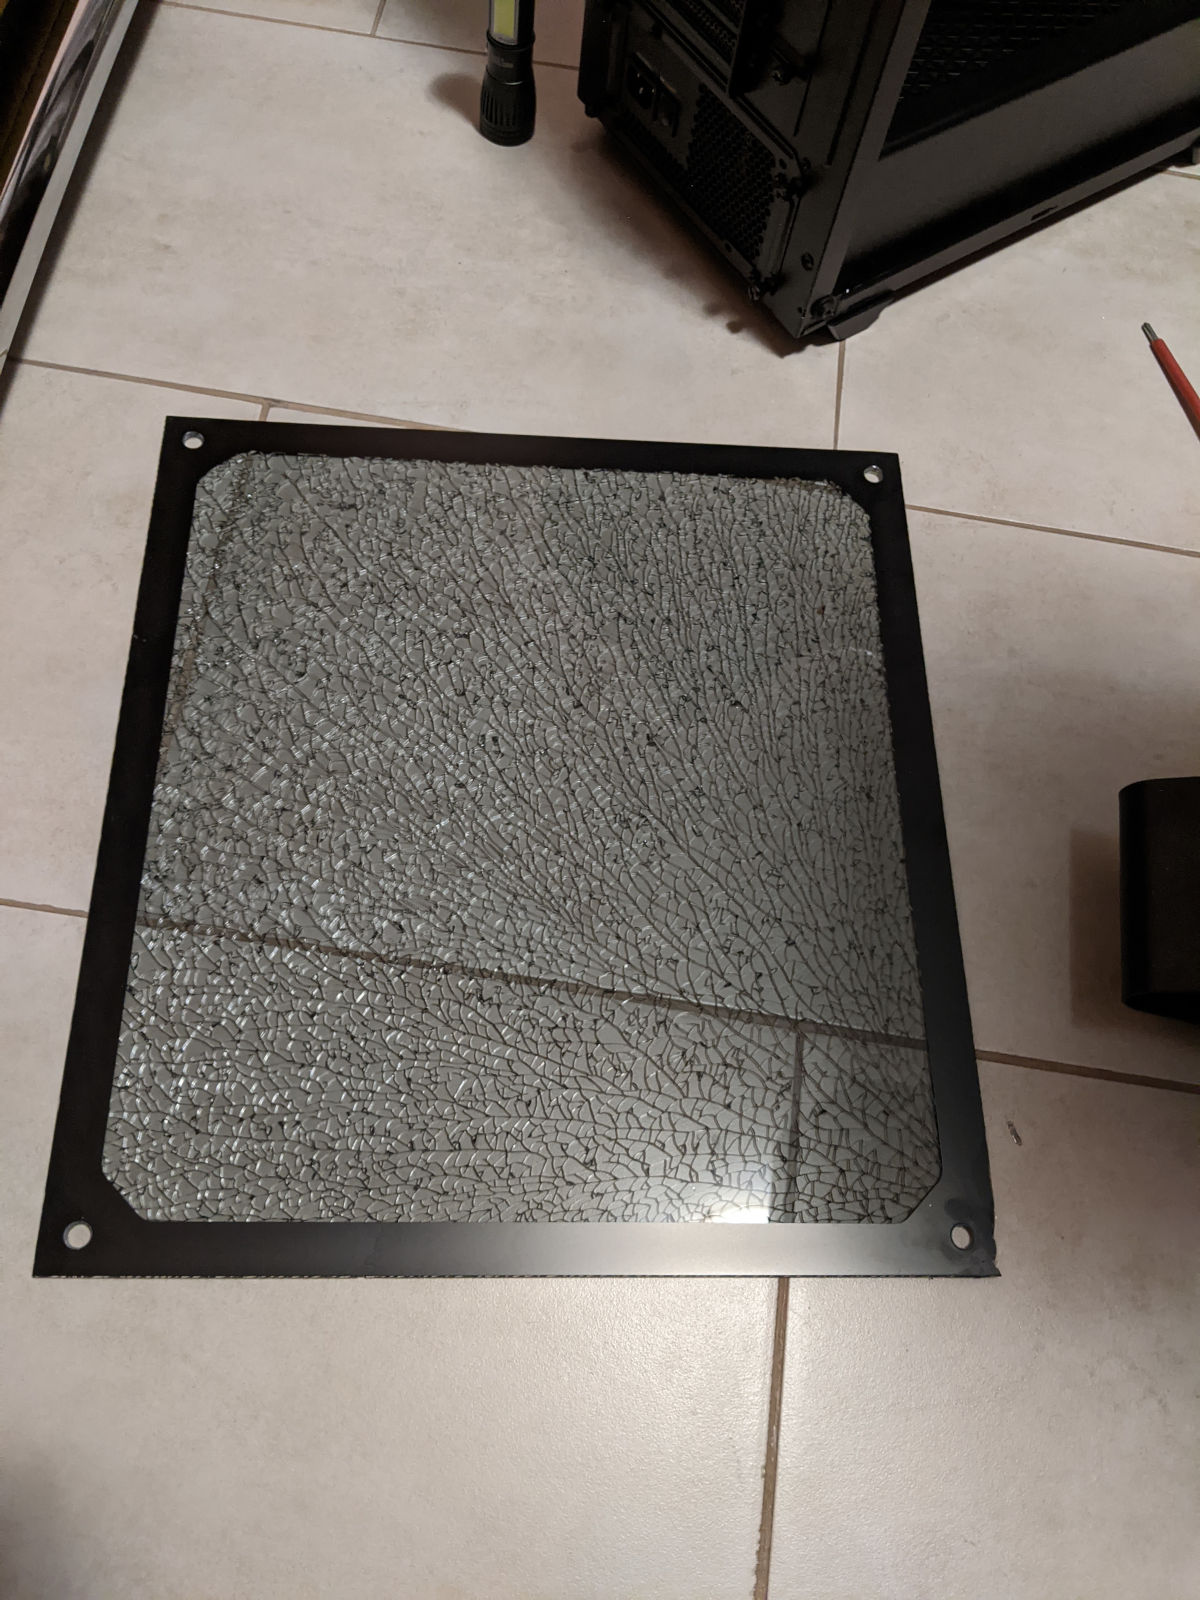 Shattered glass side panel of a desktop case